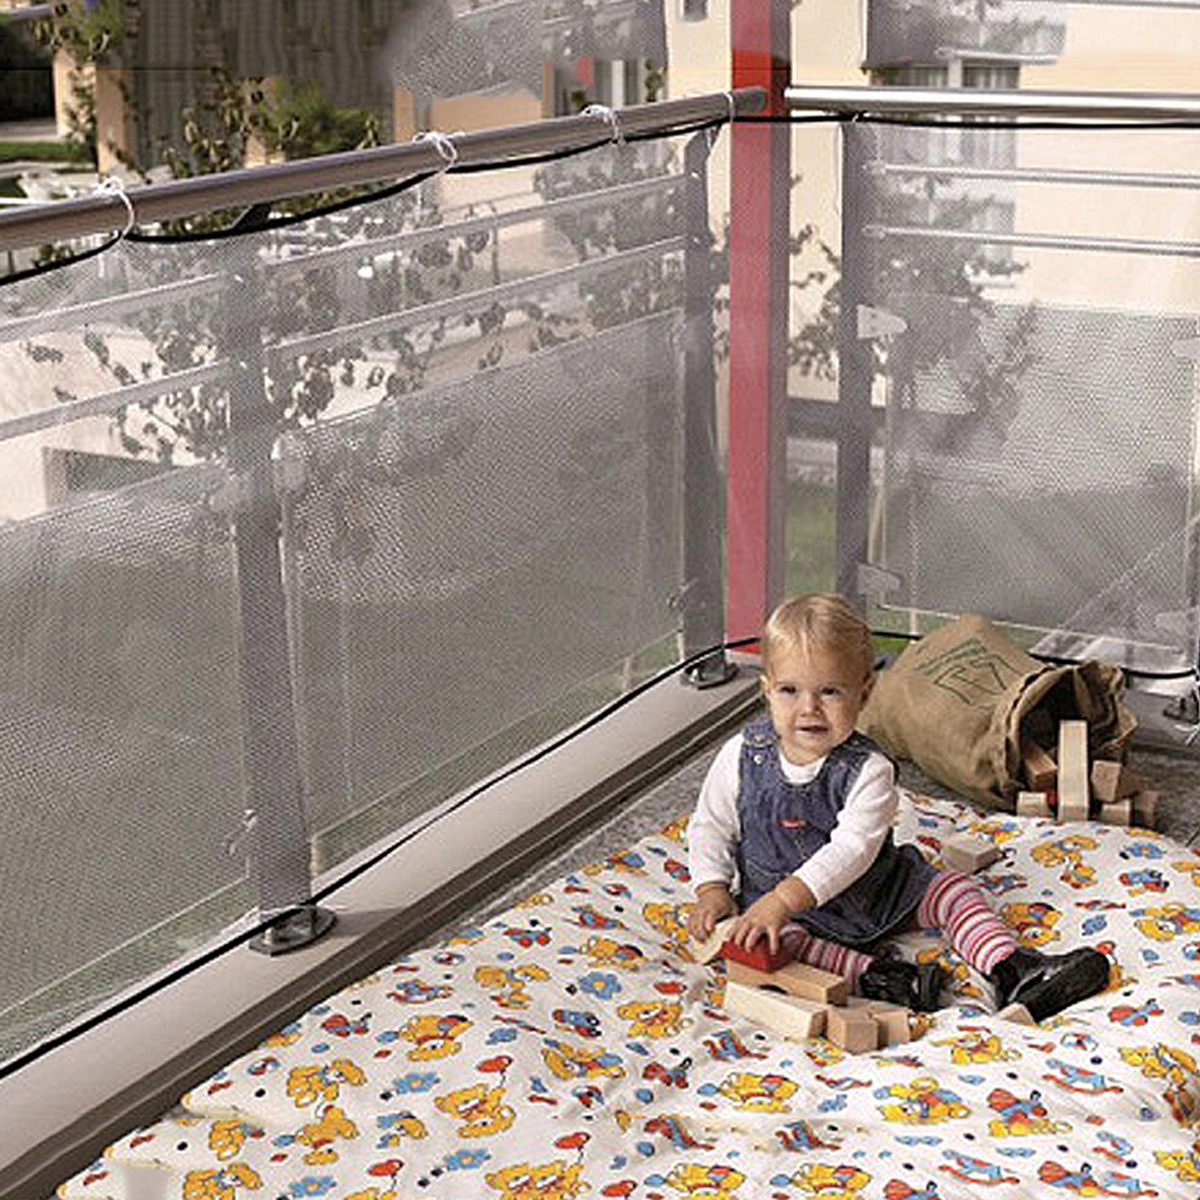 3m fortykkede børnetrapper sikkerhedsnet tykt hårdt mesh netbeskyttelse skinne altan trappehegn babyhegn trappe beskyttelsesnet